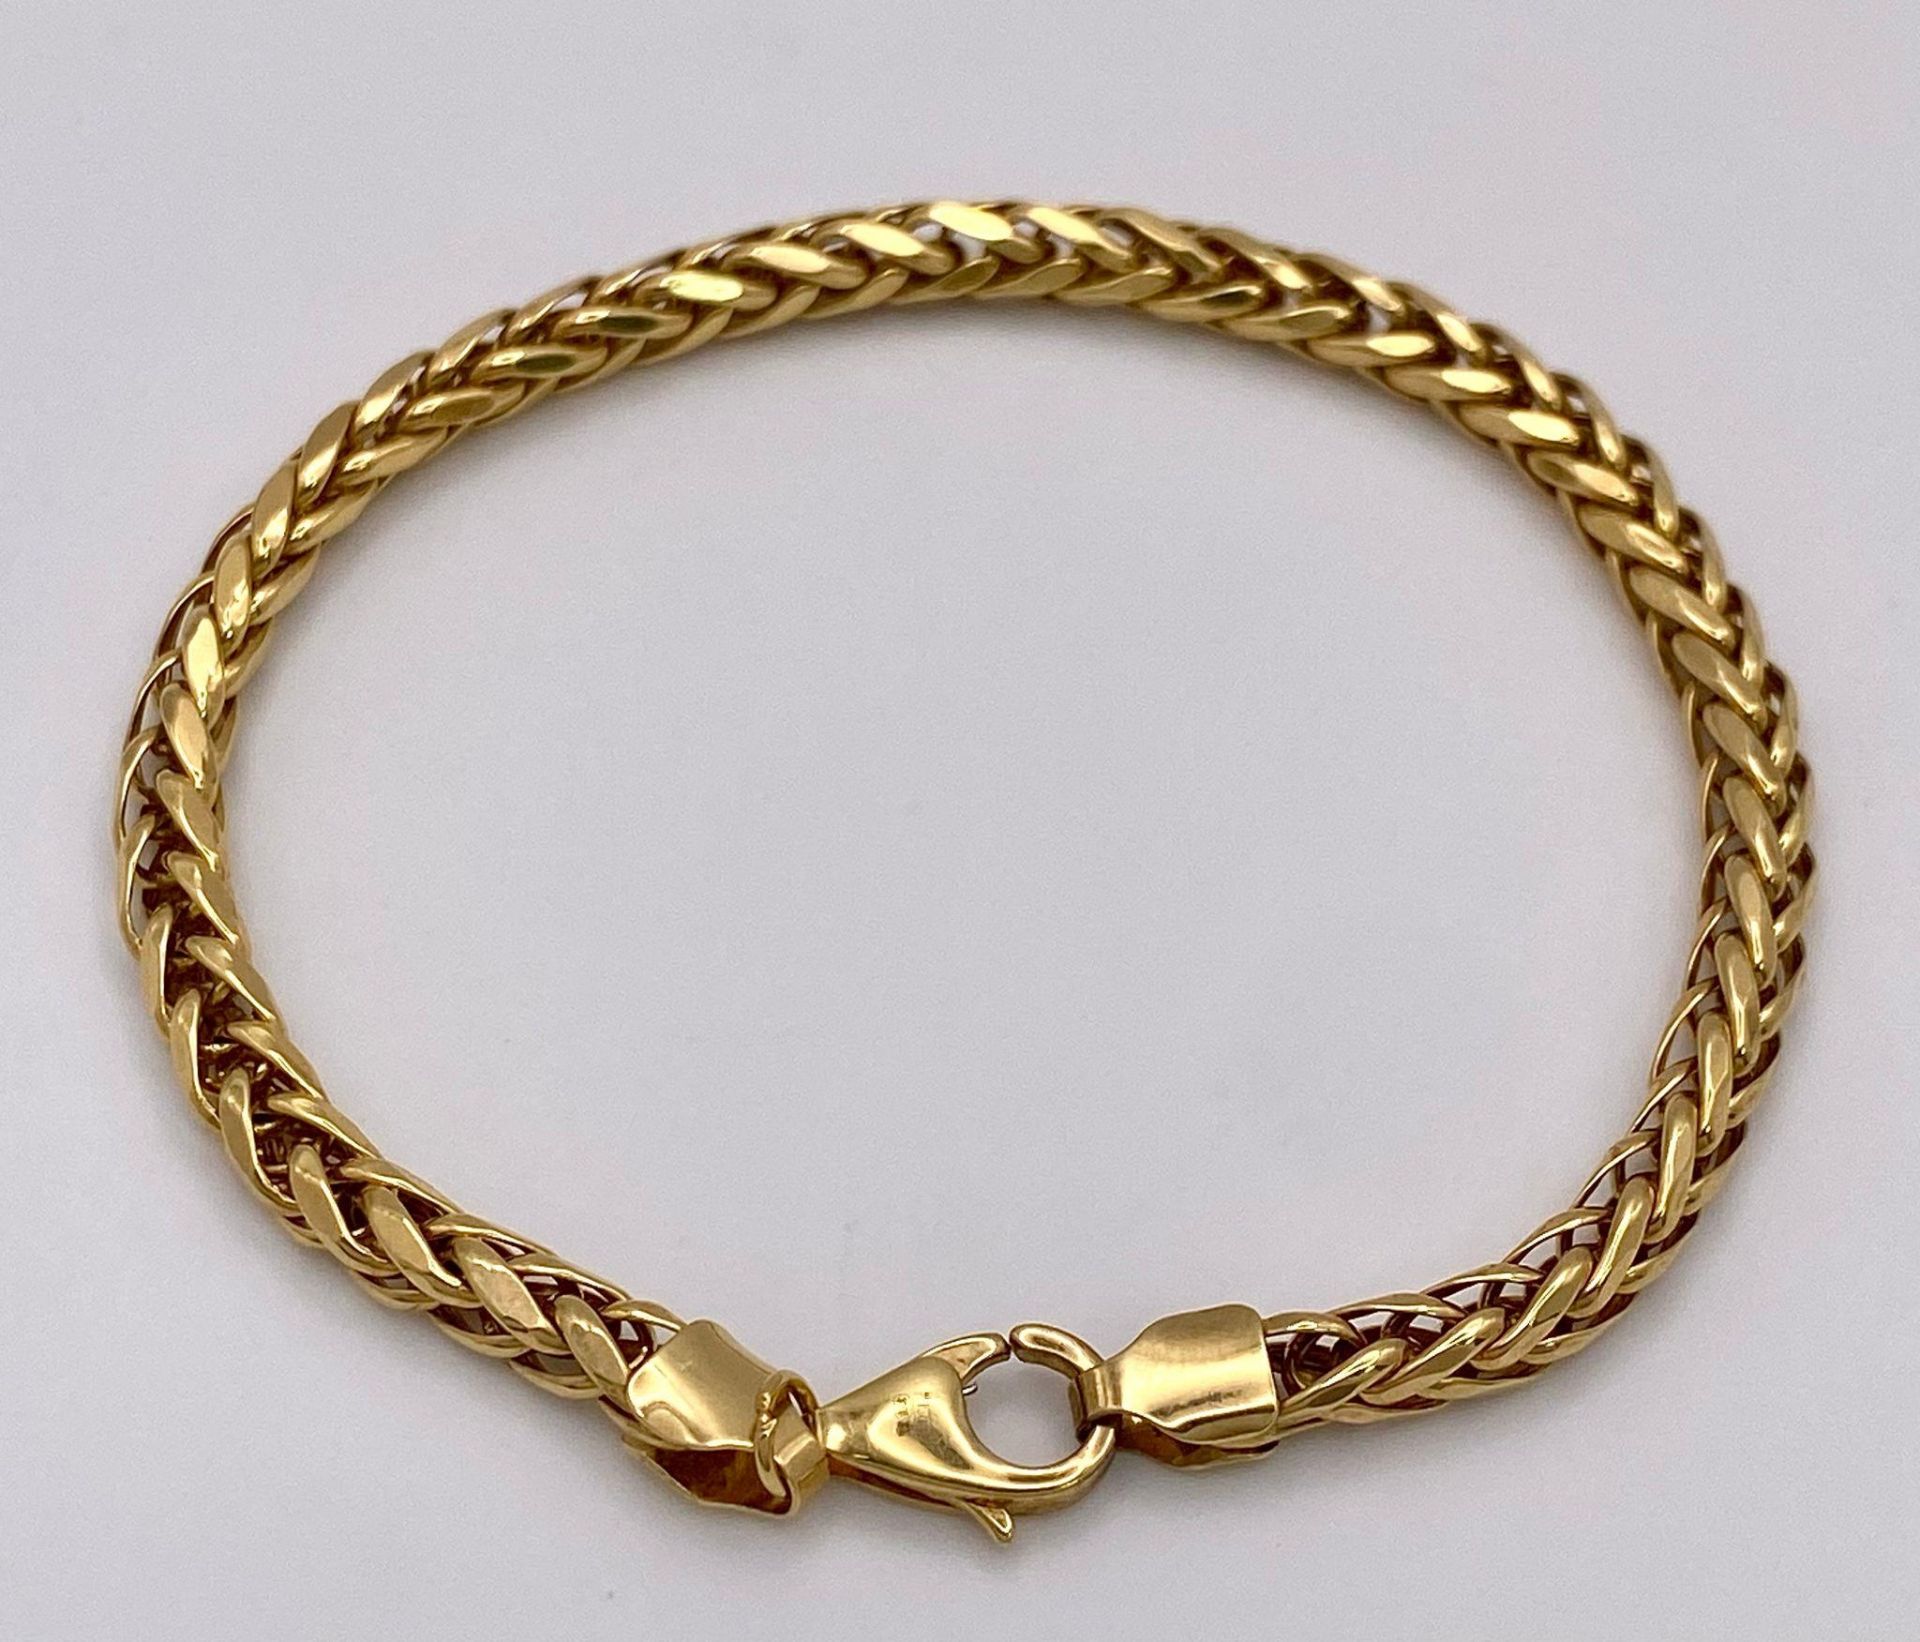 A 9K Yellow Gold Intricate Link Bracelet. 18cm. 5g weight. - Bild 4 aus 6